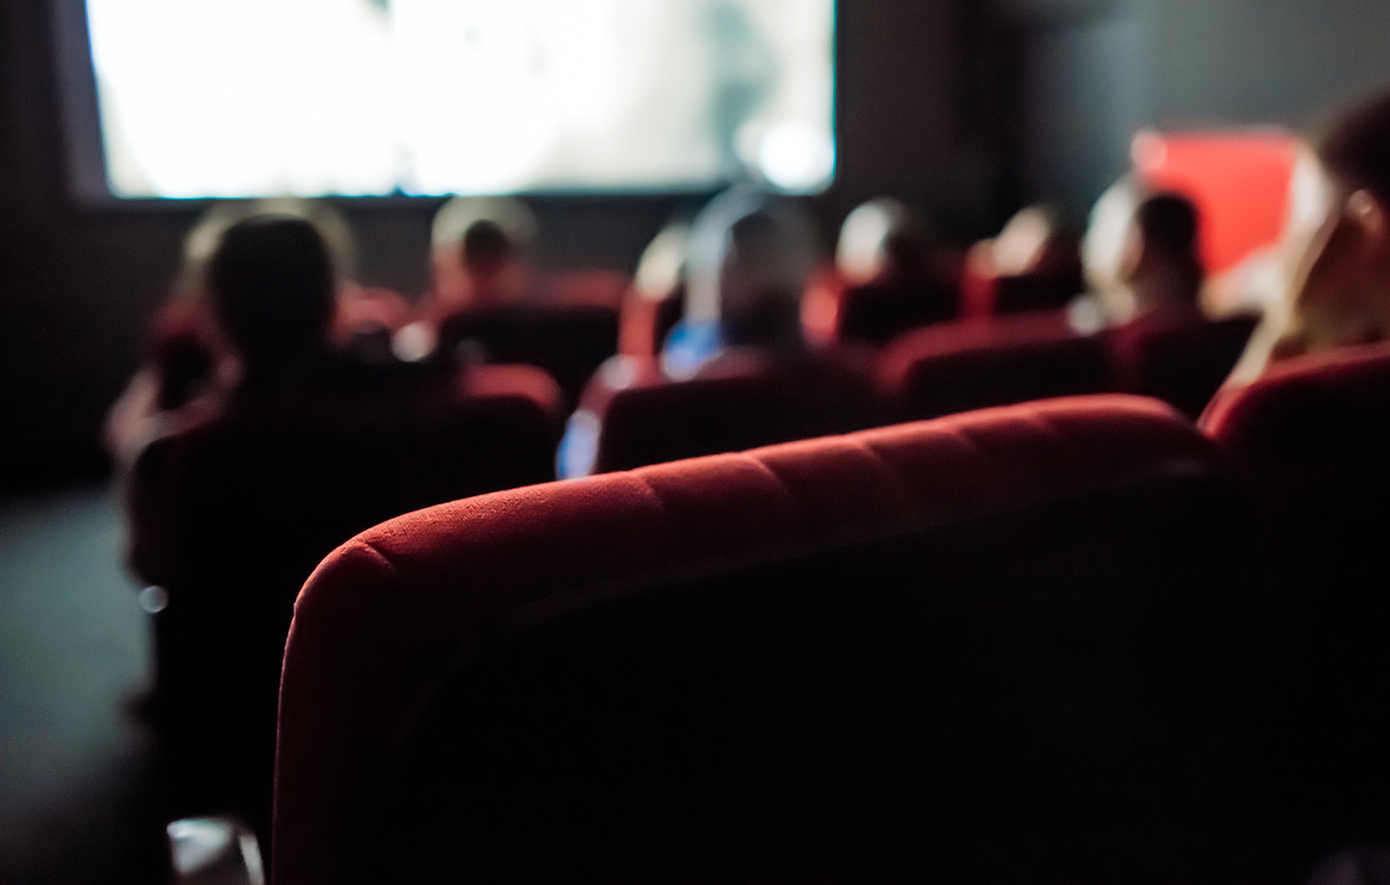 Ημέρα Ελληνικού Κινηματογράφου: Δεκάδες ελληνικές ταινίες στα σινεμά με χαμηλό εισιτήριο